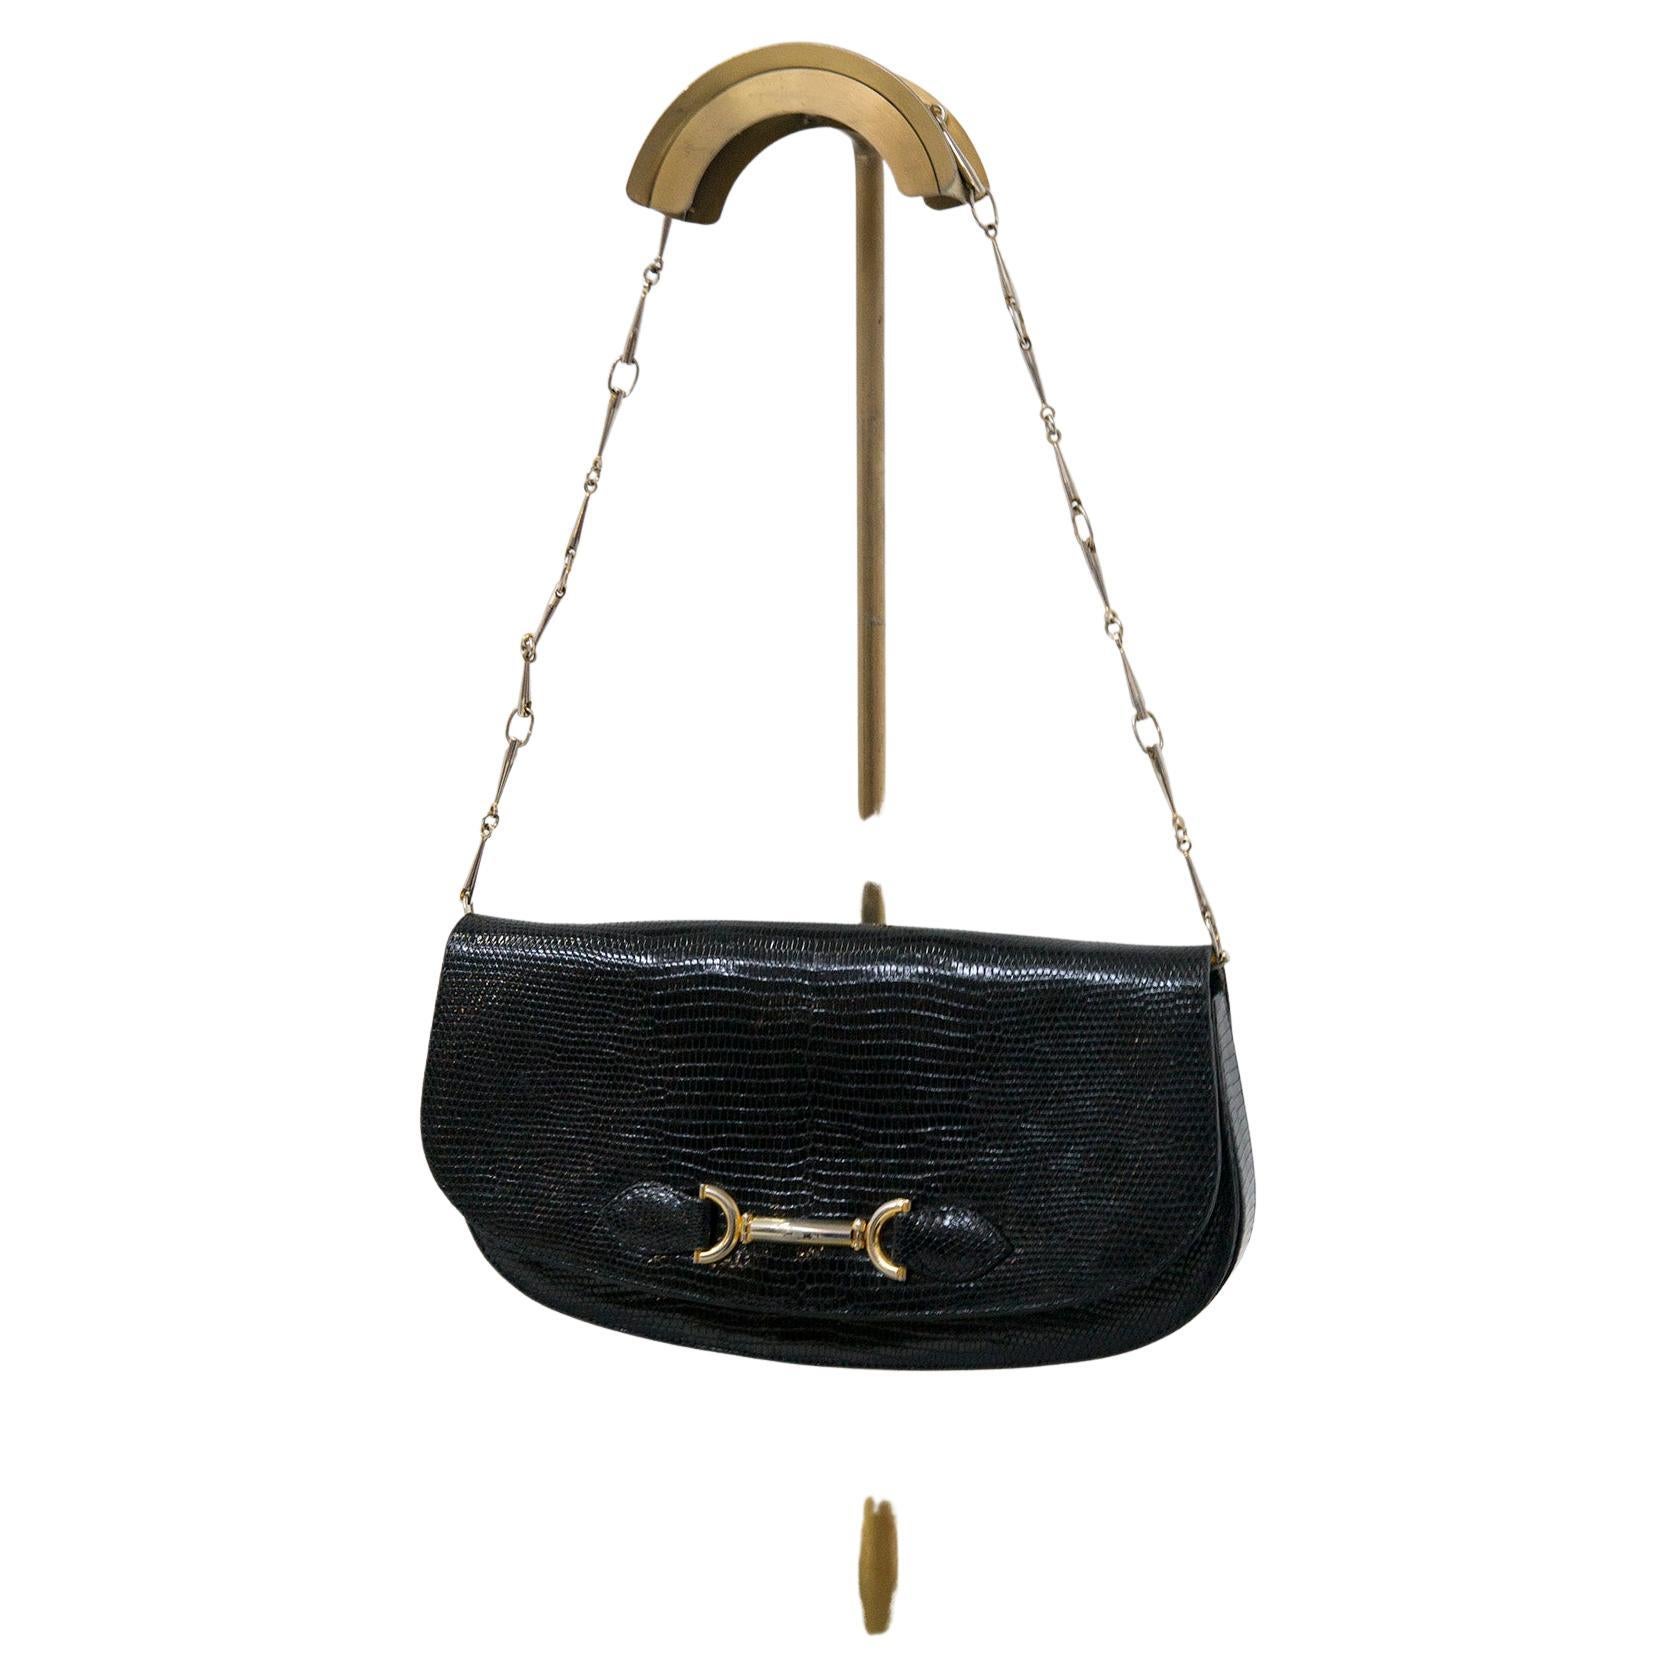 Vintage-Tasche aus schwarzem Leder und Goldmetall